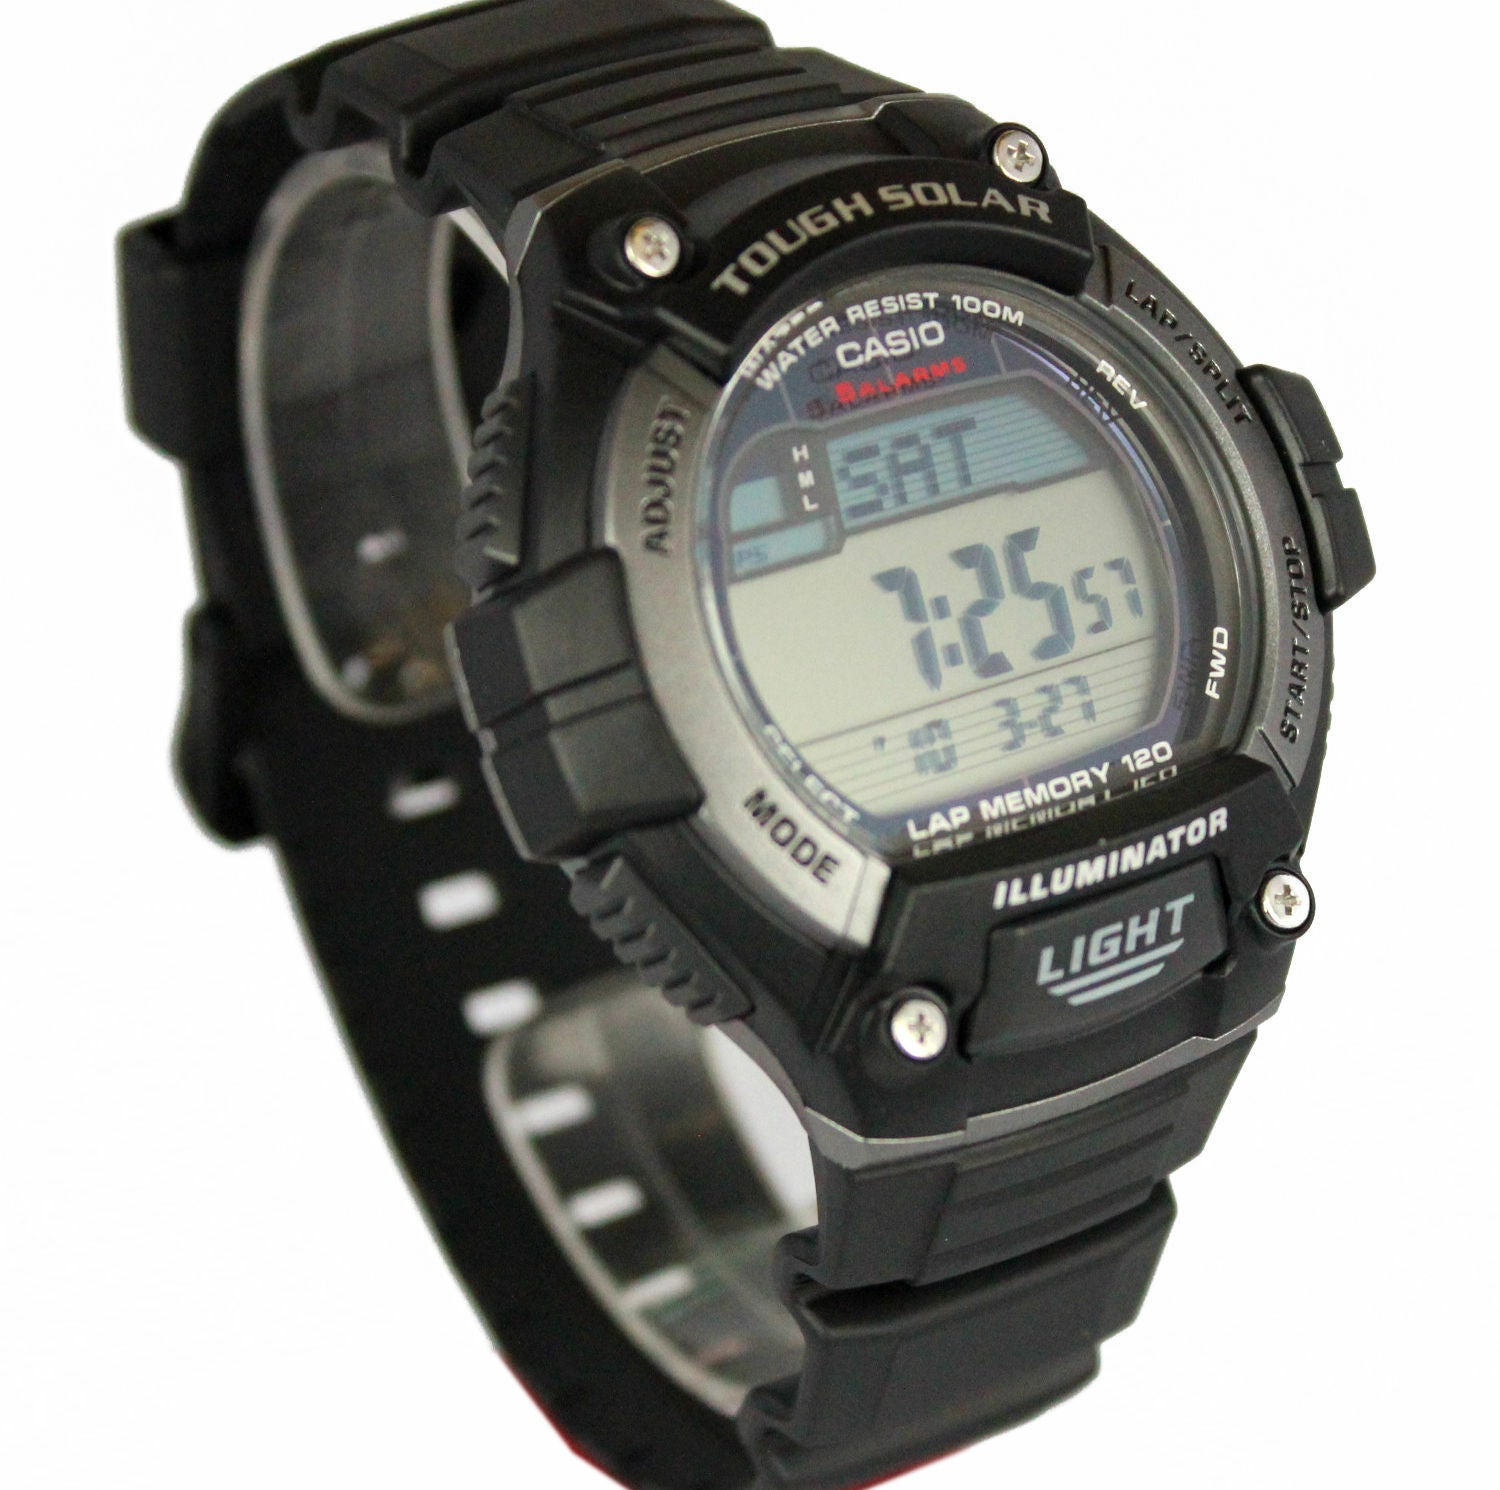 Casio Men's W-S220 Tough Solar 120 Lap Memory Led Light Watch W-S220C-1A New